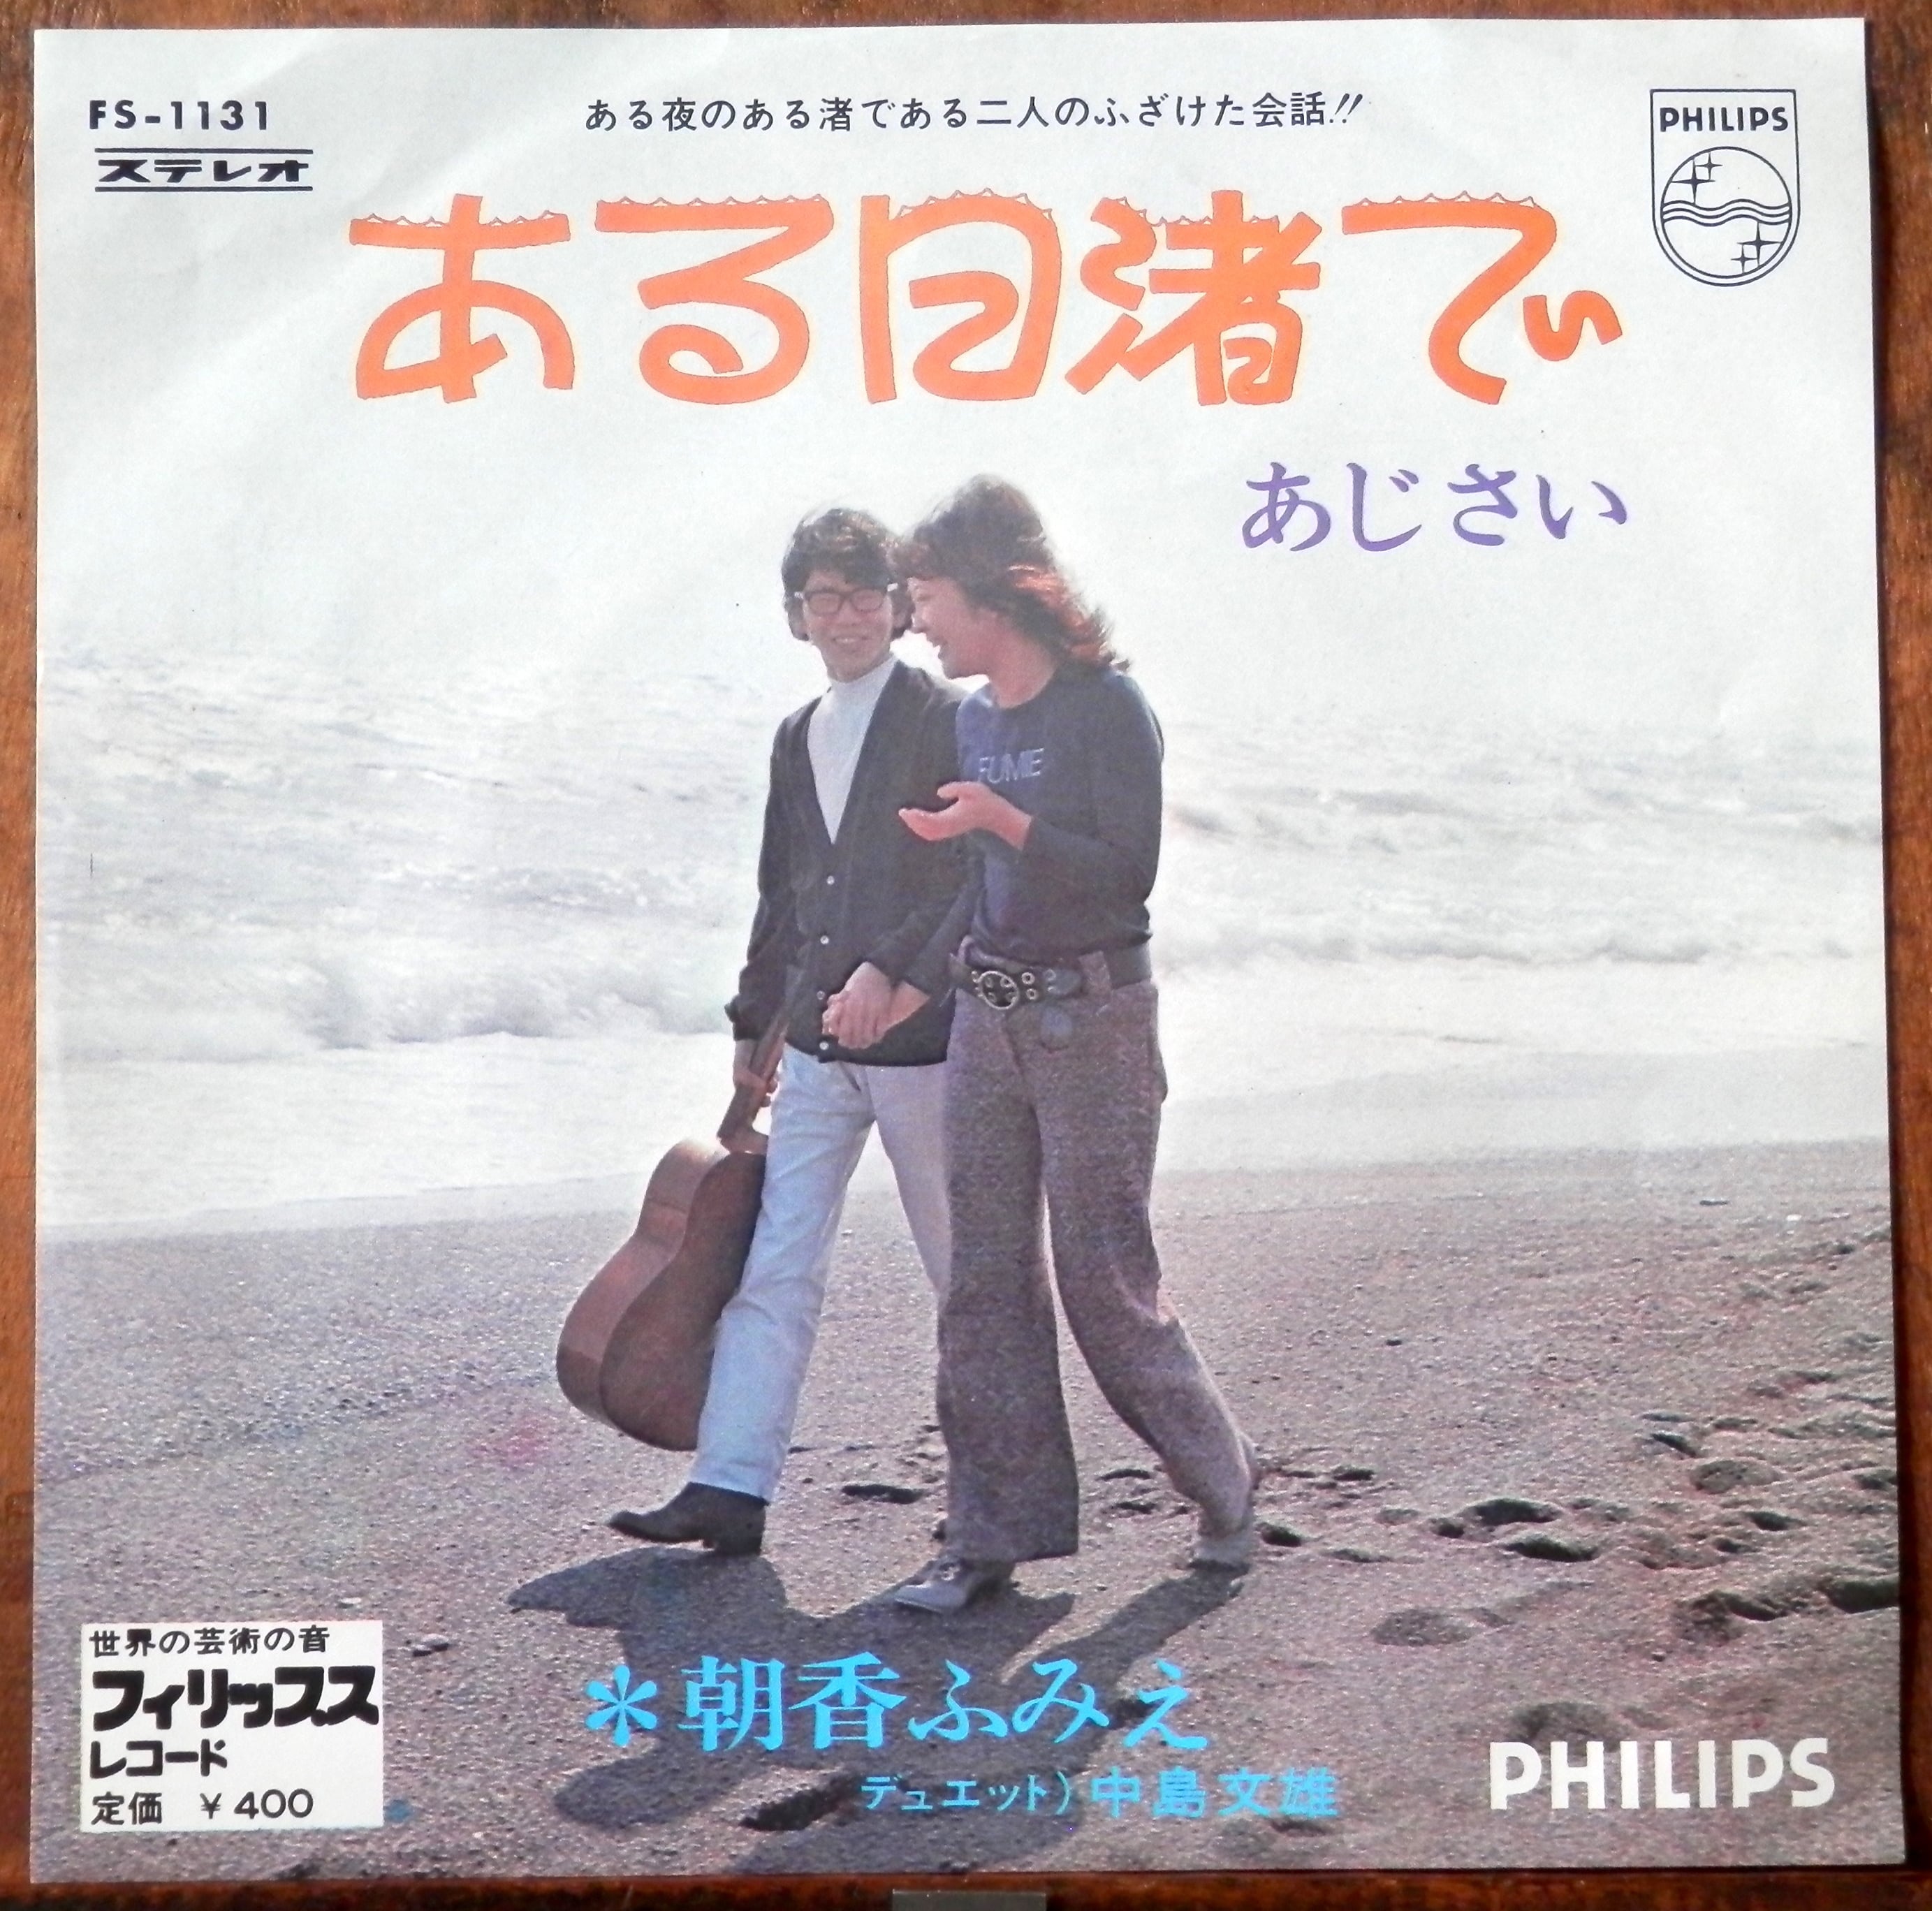 70【EP】朝香ふみえ、中島文雄 ある日渚で 音盤窟レコード